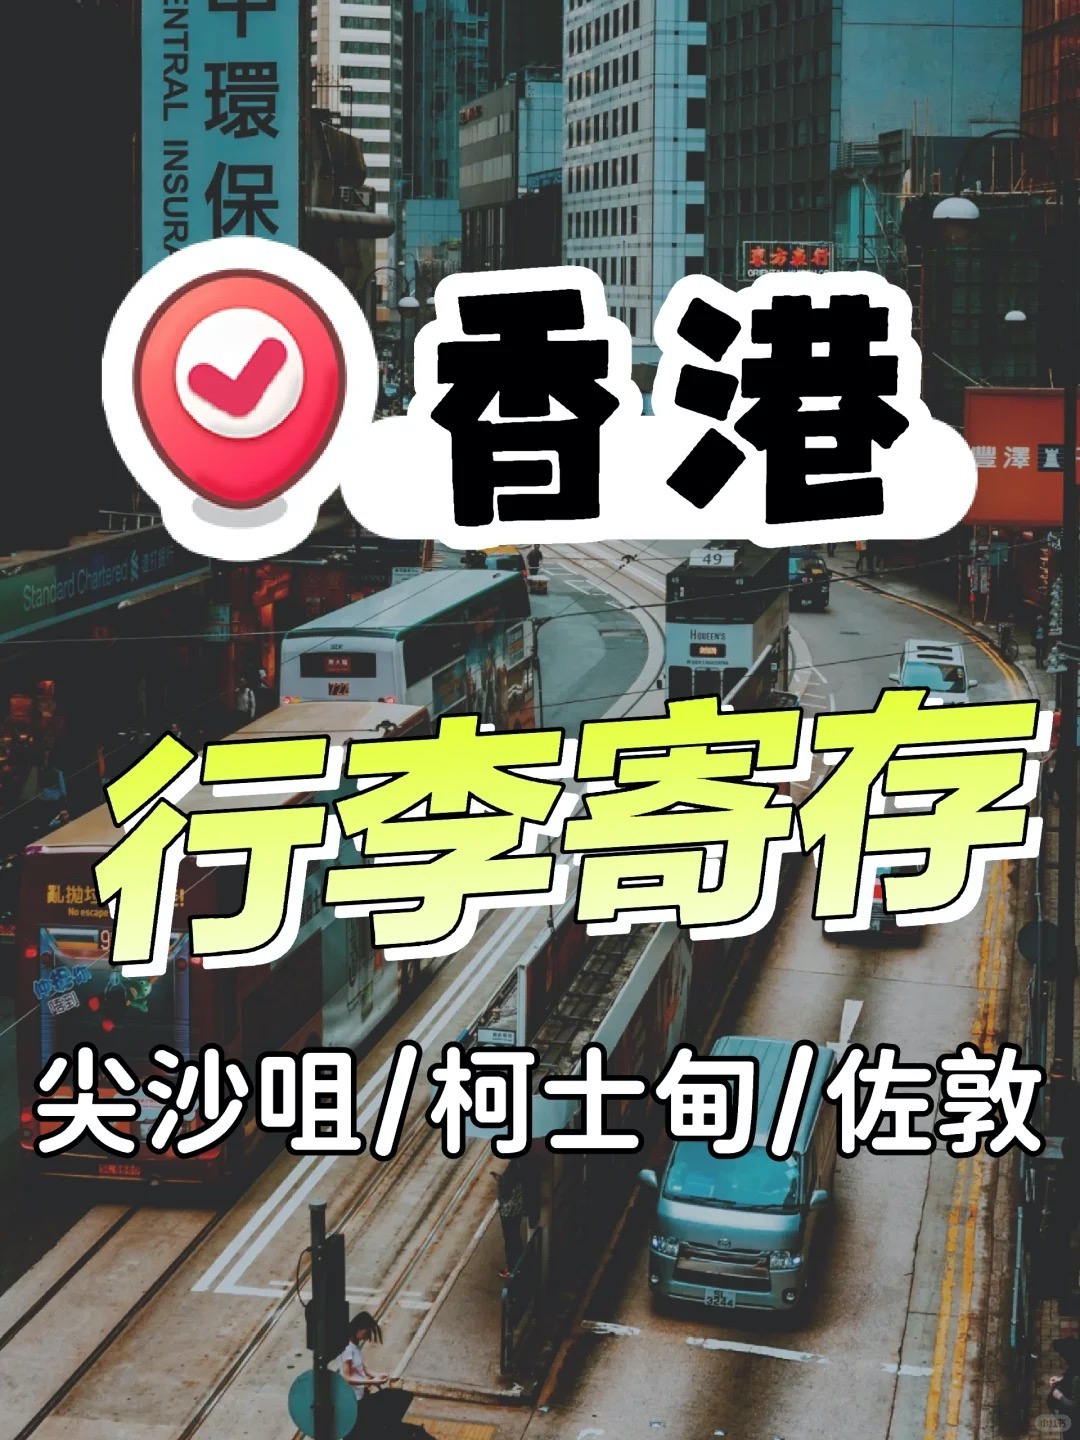 香港、免费寄存行李攻略丨怎么存最划算